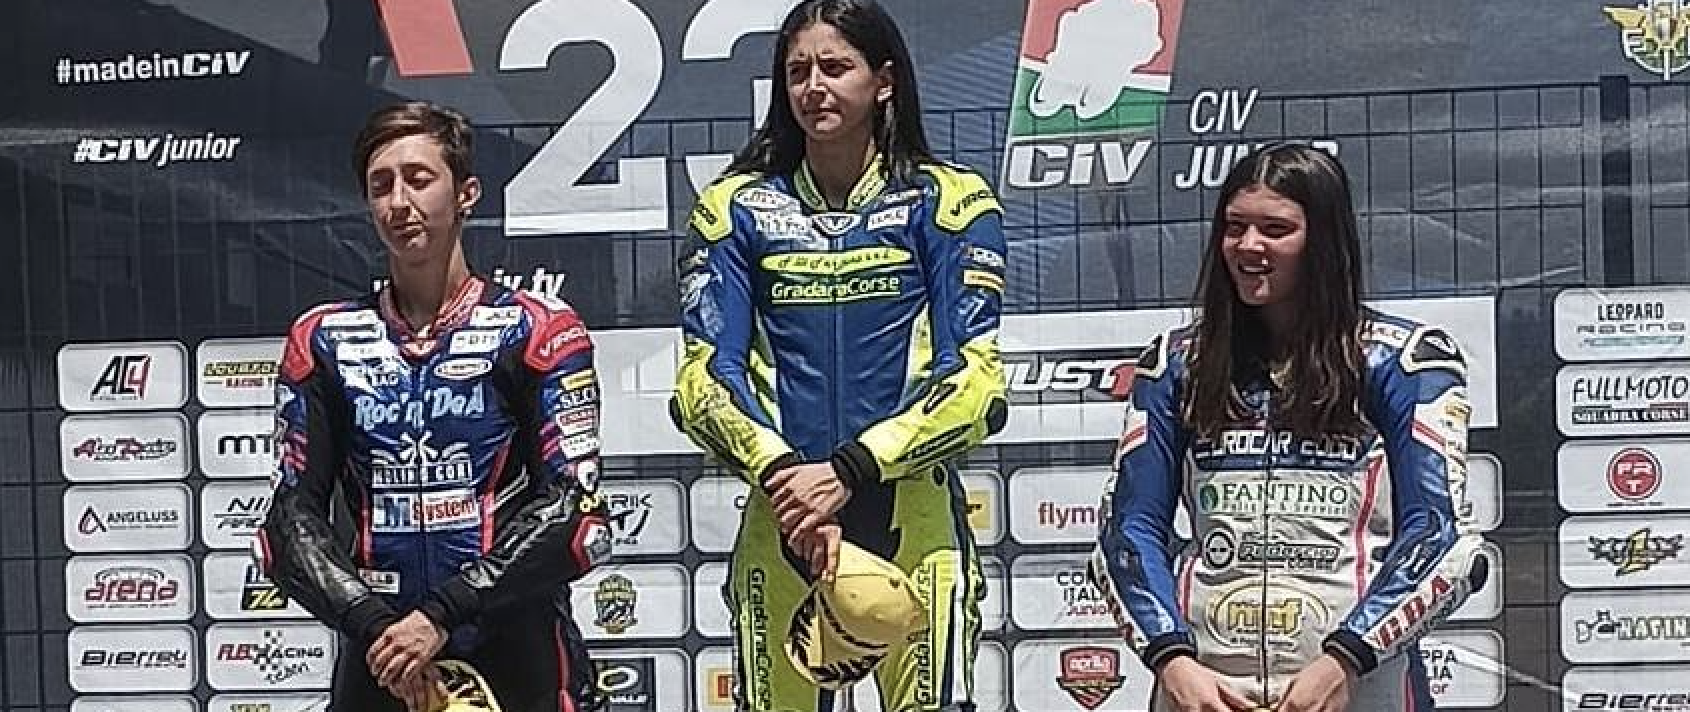 La Guida - Arianna Barale sul podio nel campionato italiano